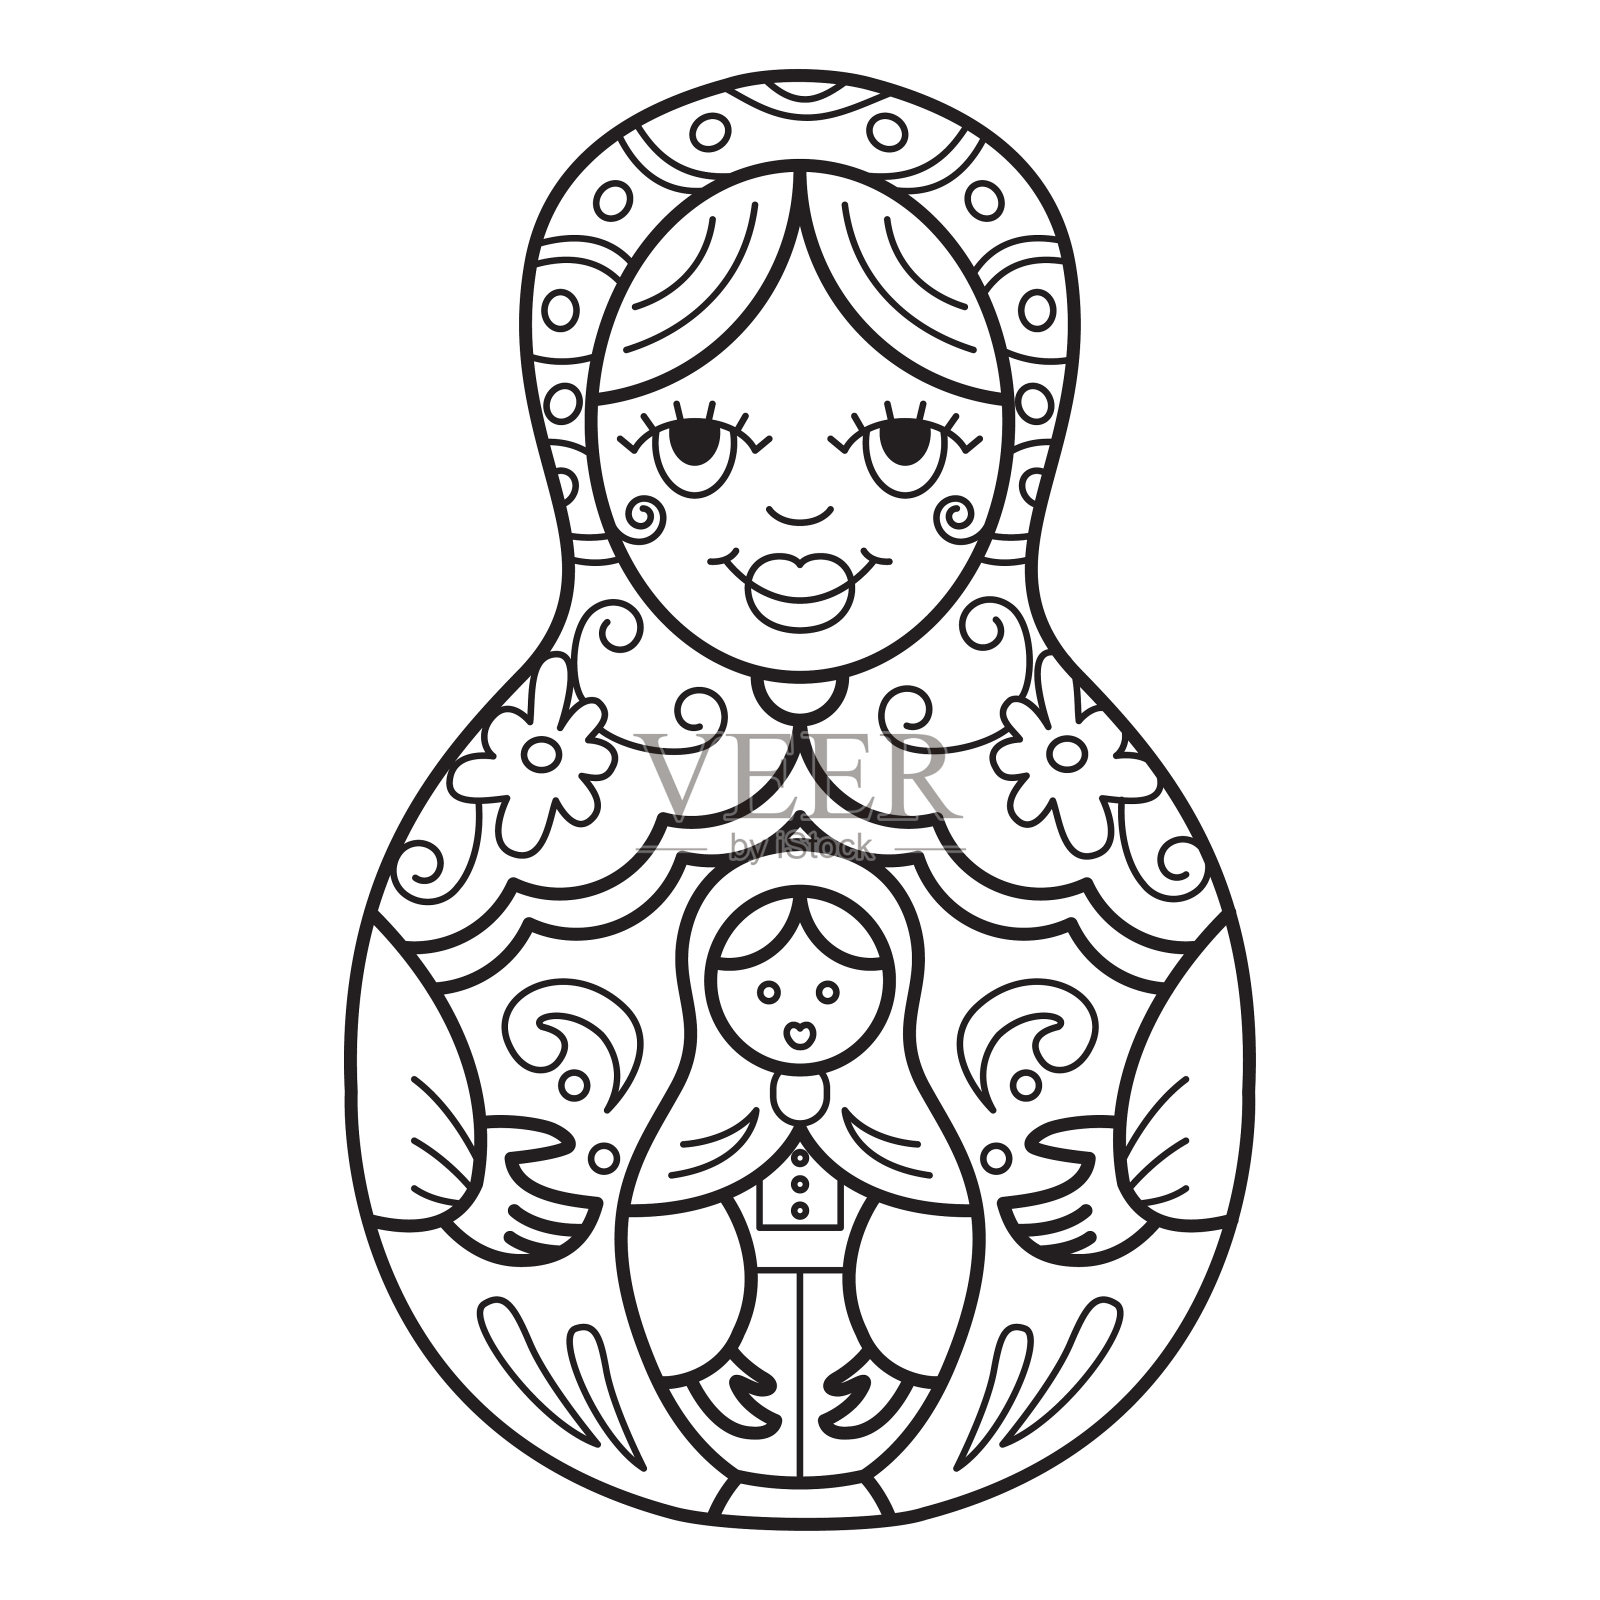 俄罗斯传统套娃(俄罗斯套娃)。插画图片素材